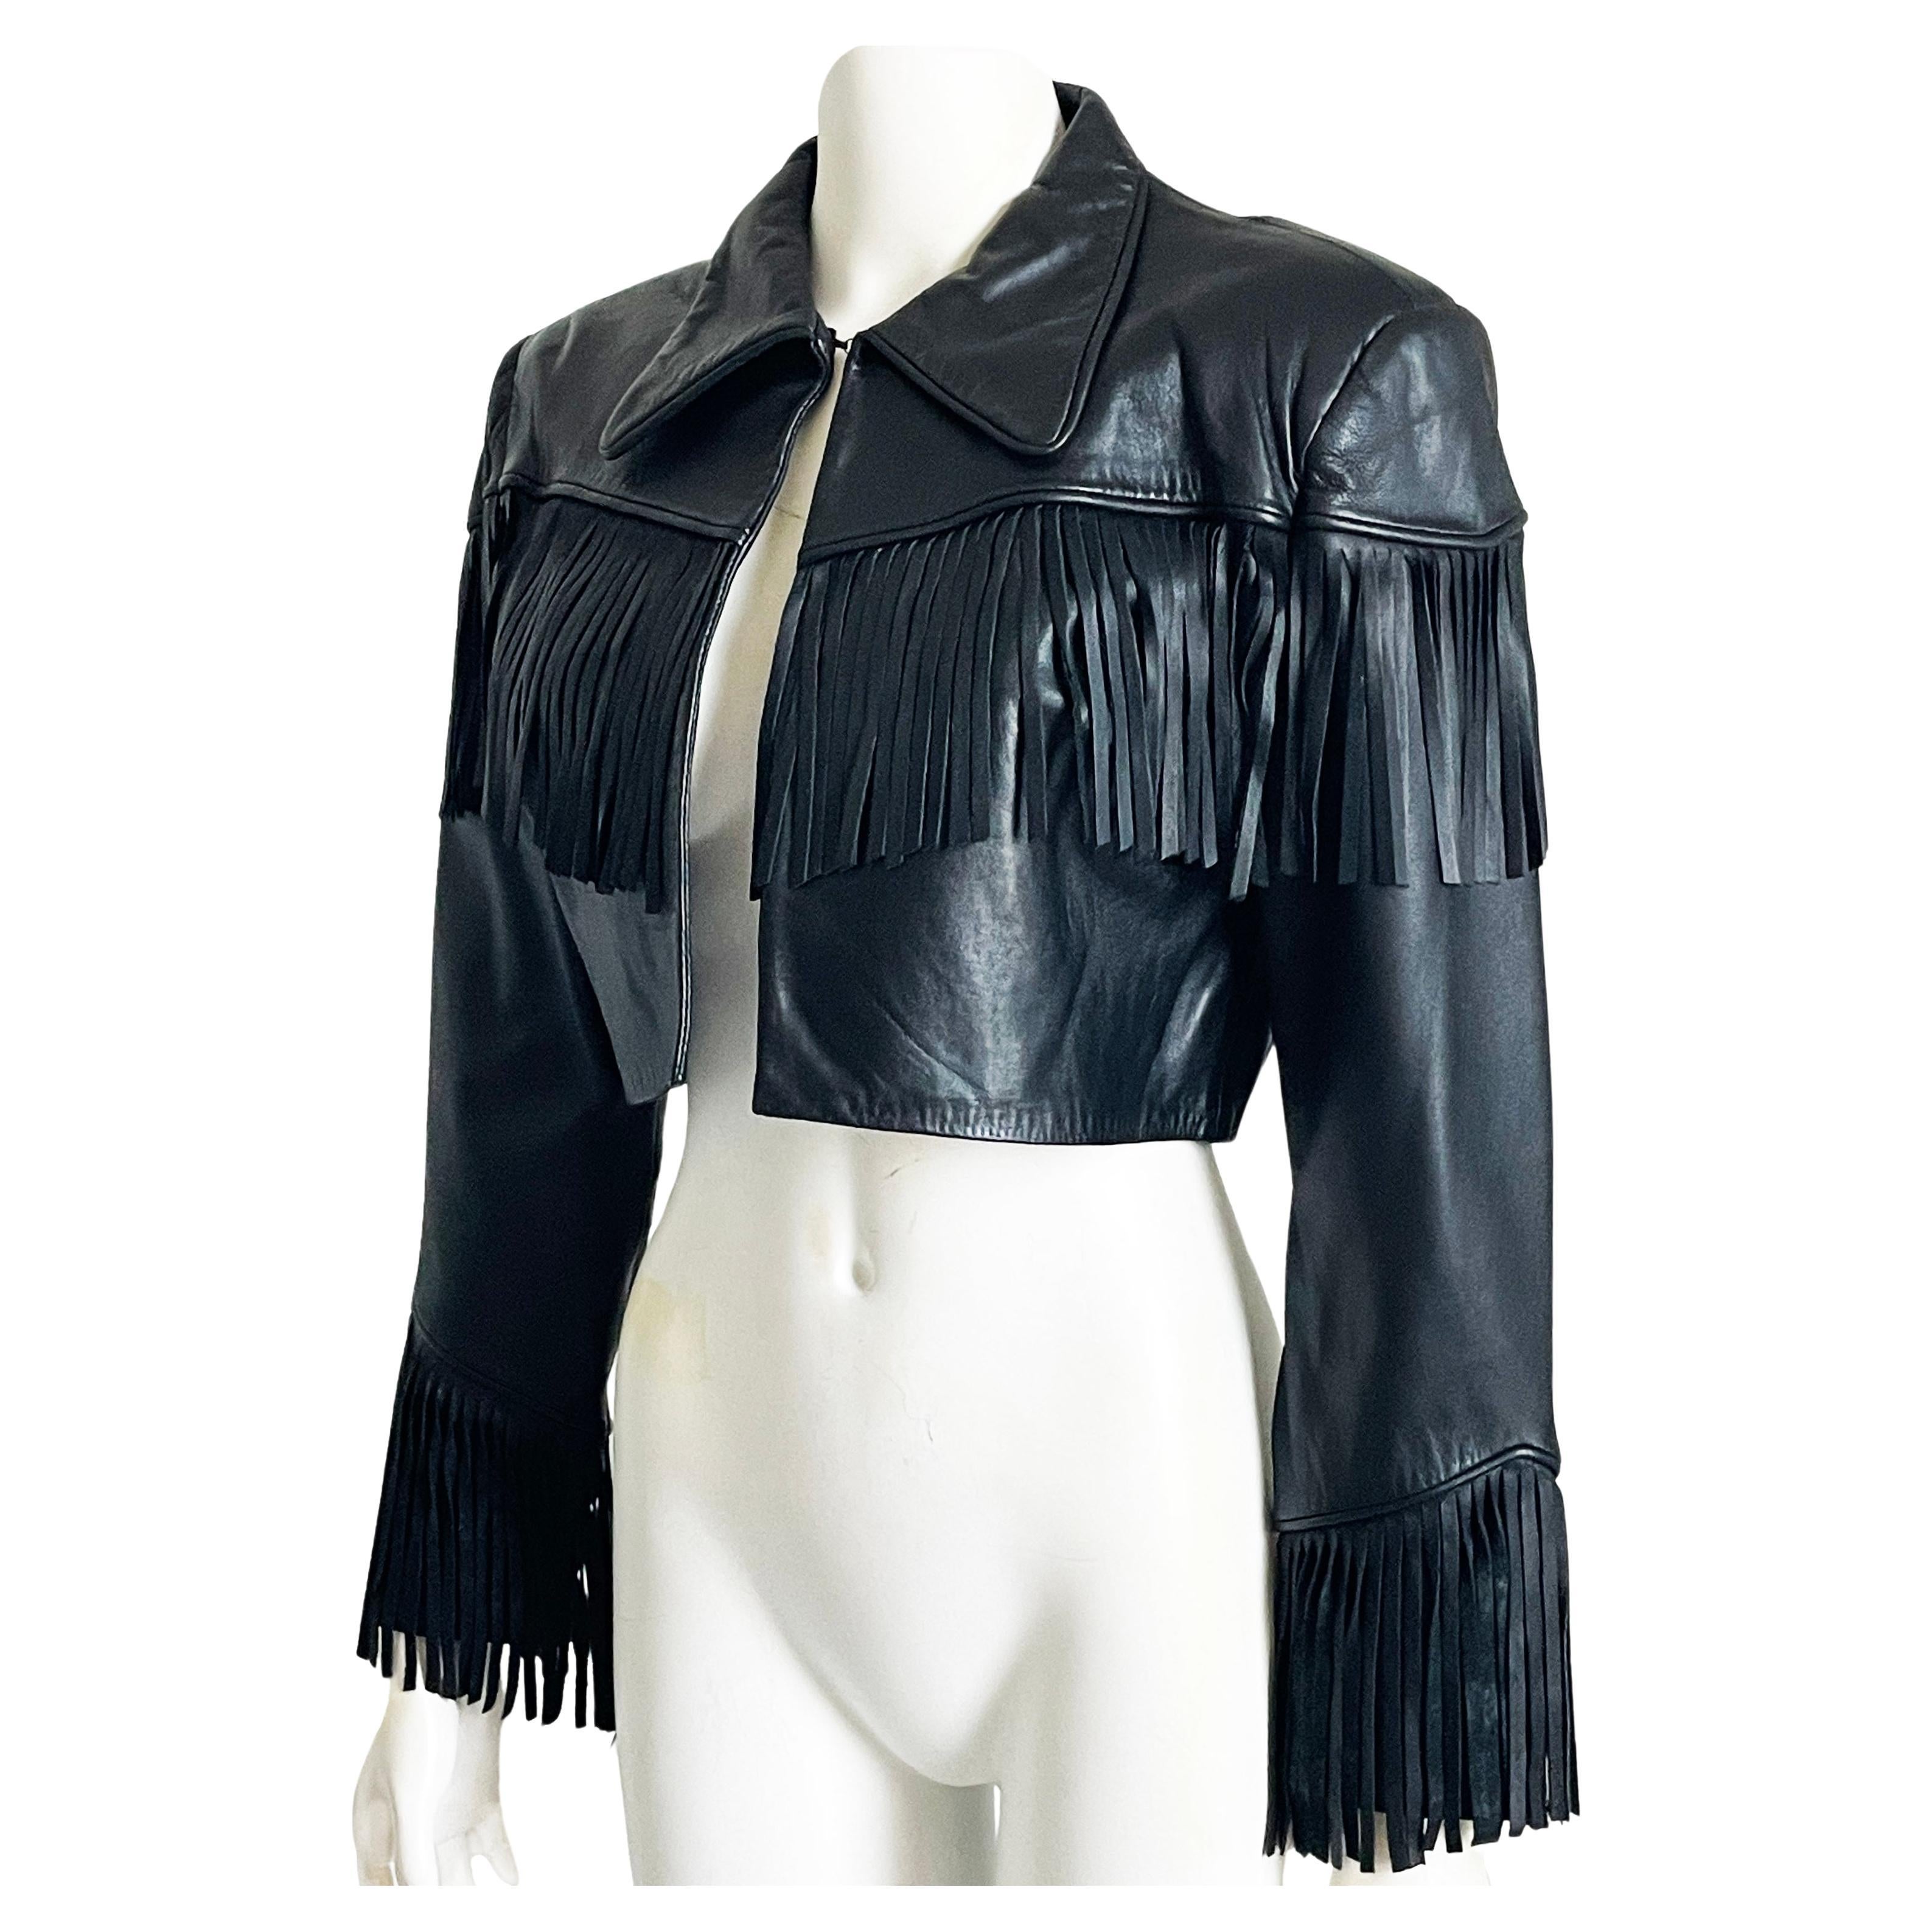 Norma Kamali Leather Jacket Black Cropped Fringe Vintage 1990s Rare Rocker Chic For Sale